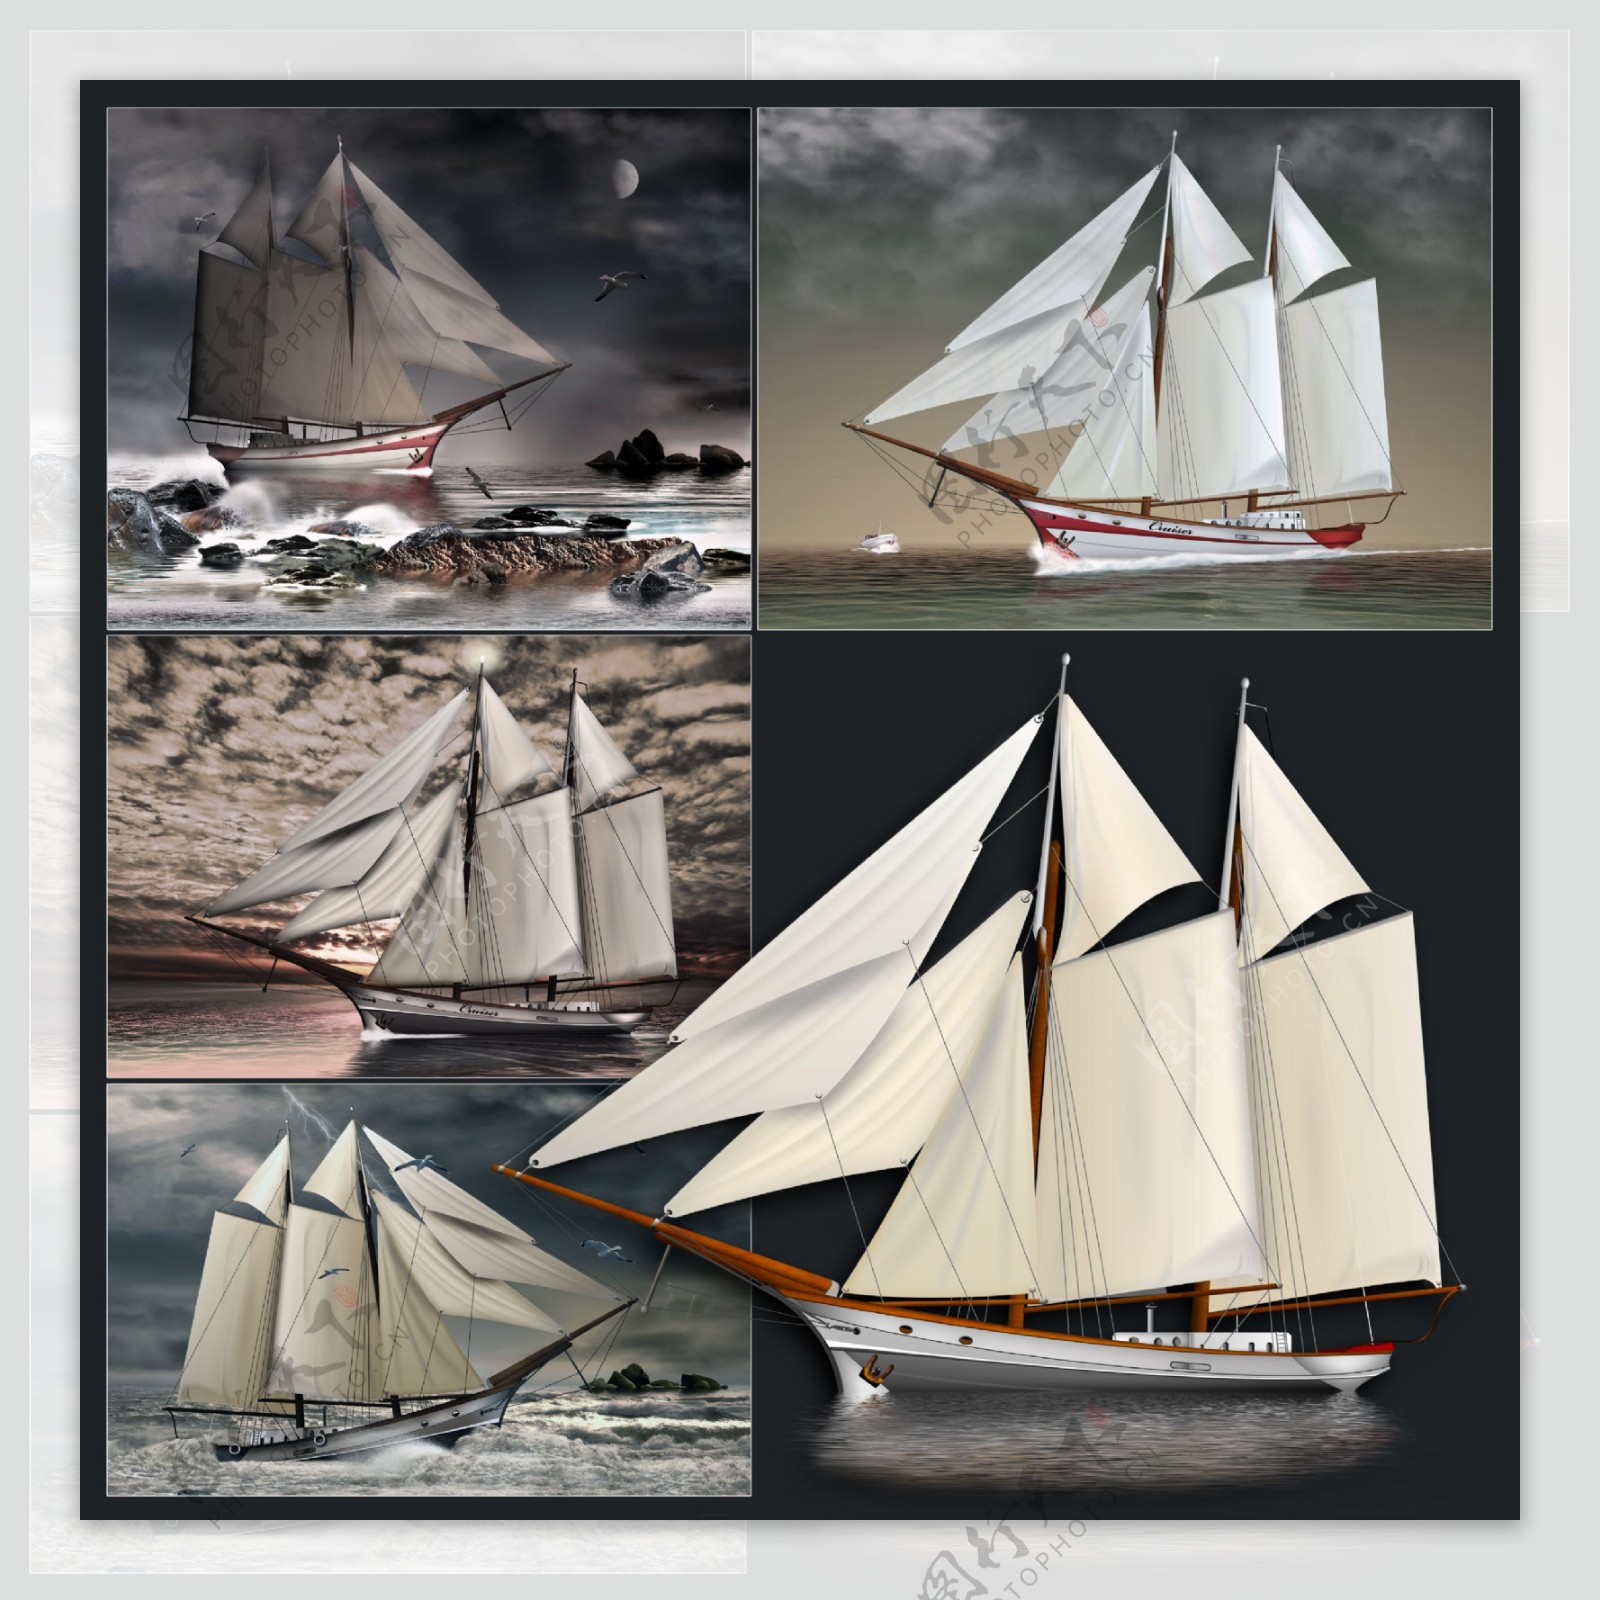 帆船模型图片